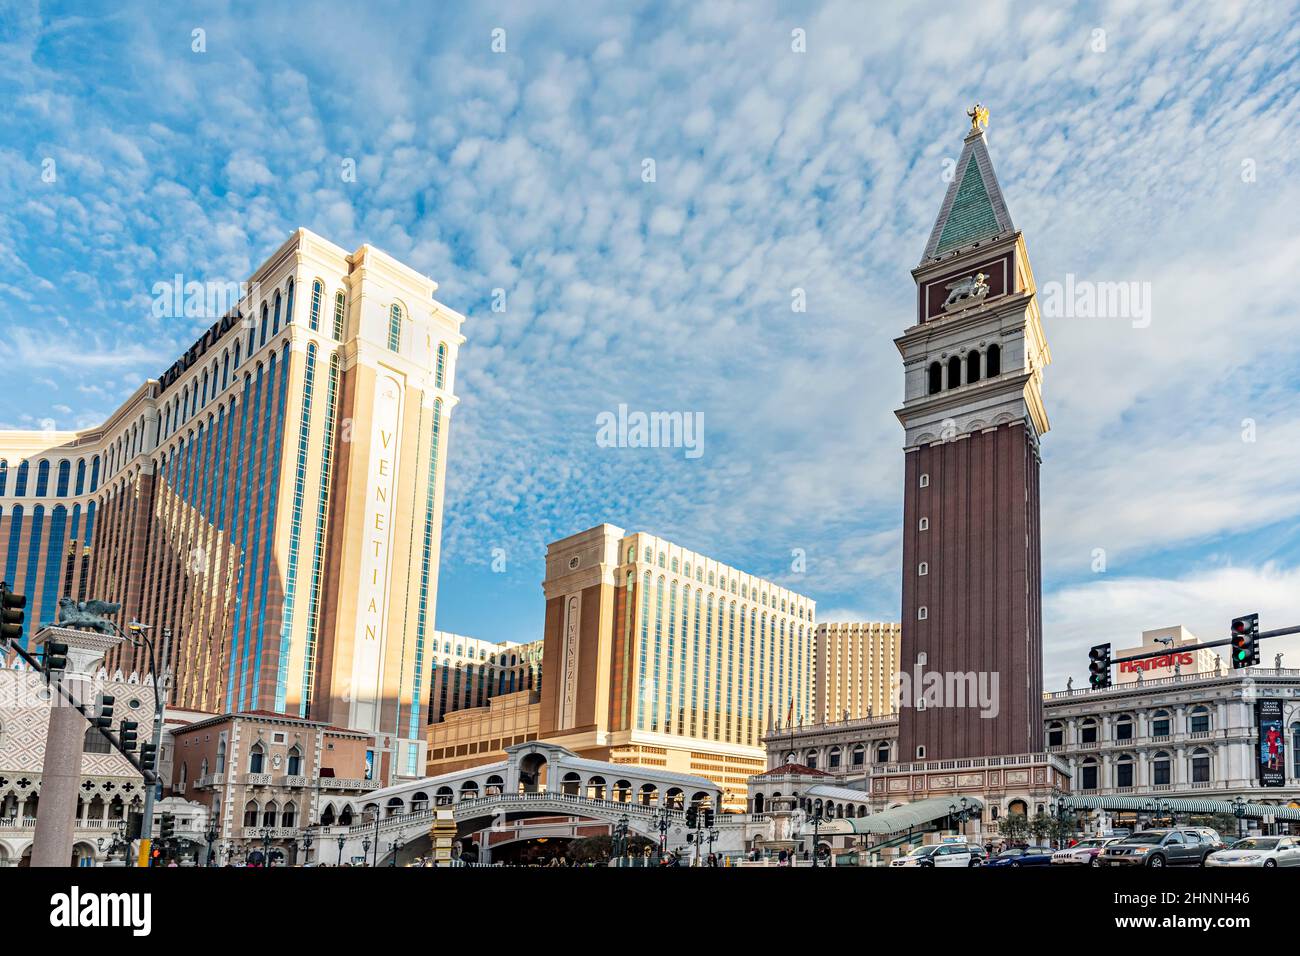 Les gens visitent le casino le Venetian à Las Vegas. Le casino attire avec des répliques de bâtiments de Venise avec télécabine et pont du rialto. Banque D'Images